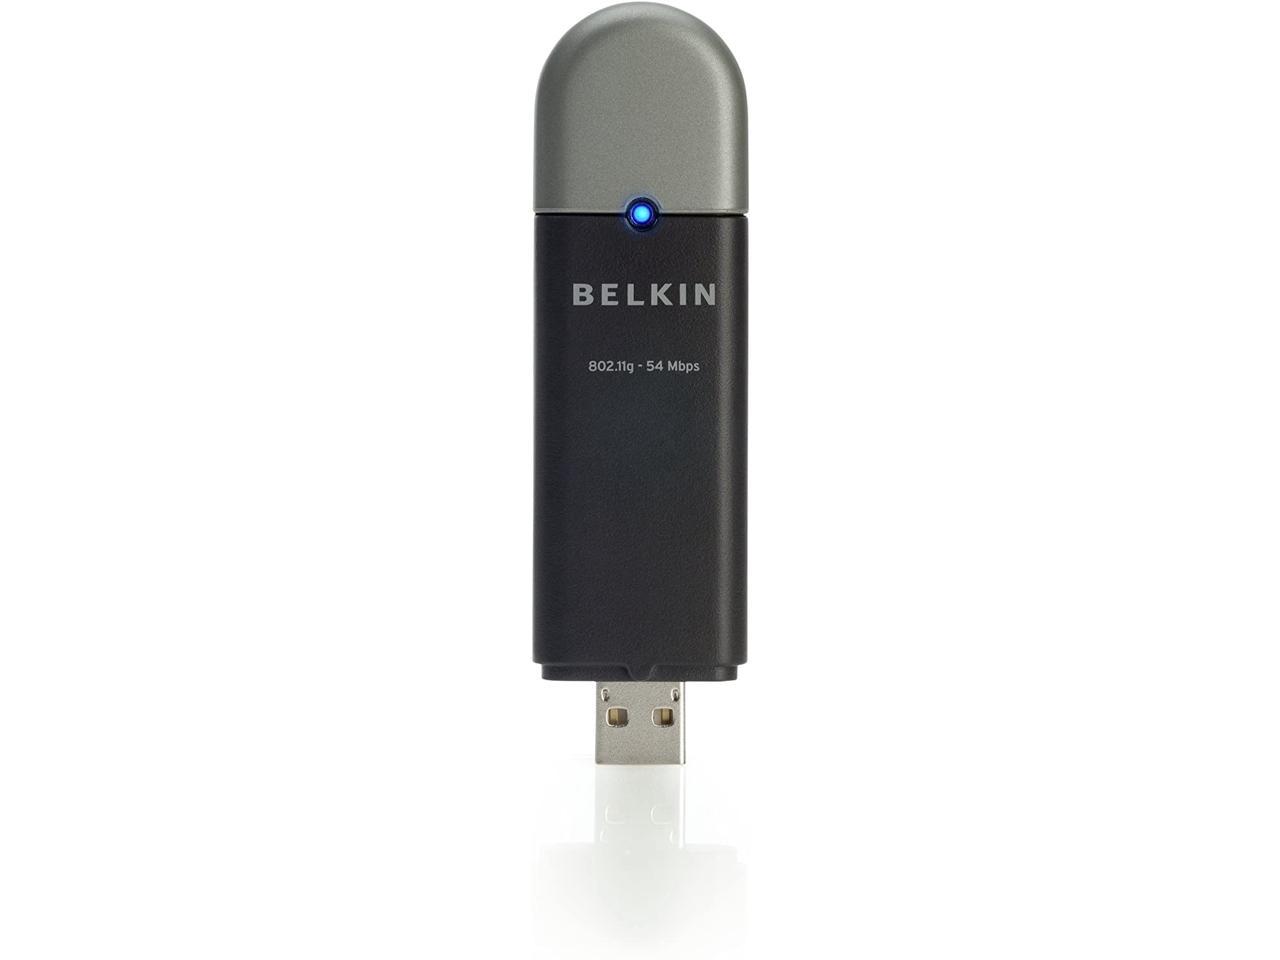 Belkin BELKIN F5D7050 Wireless G Wi-Fi USB Adapter 